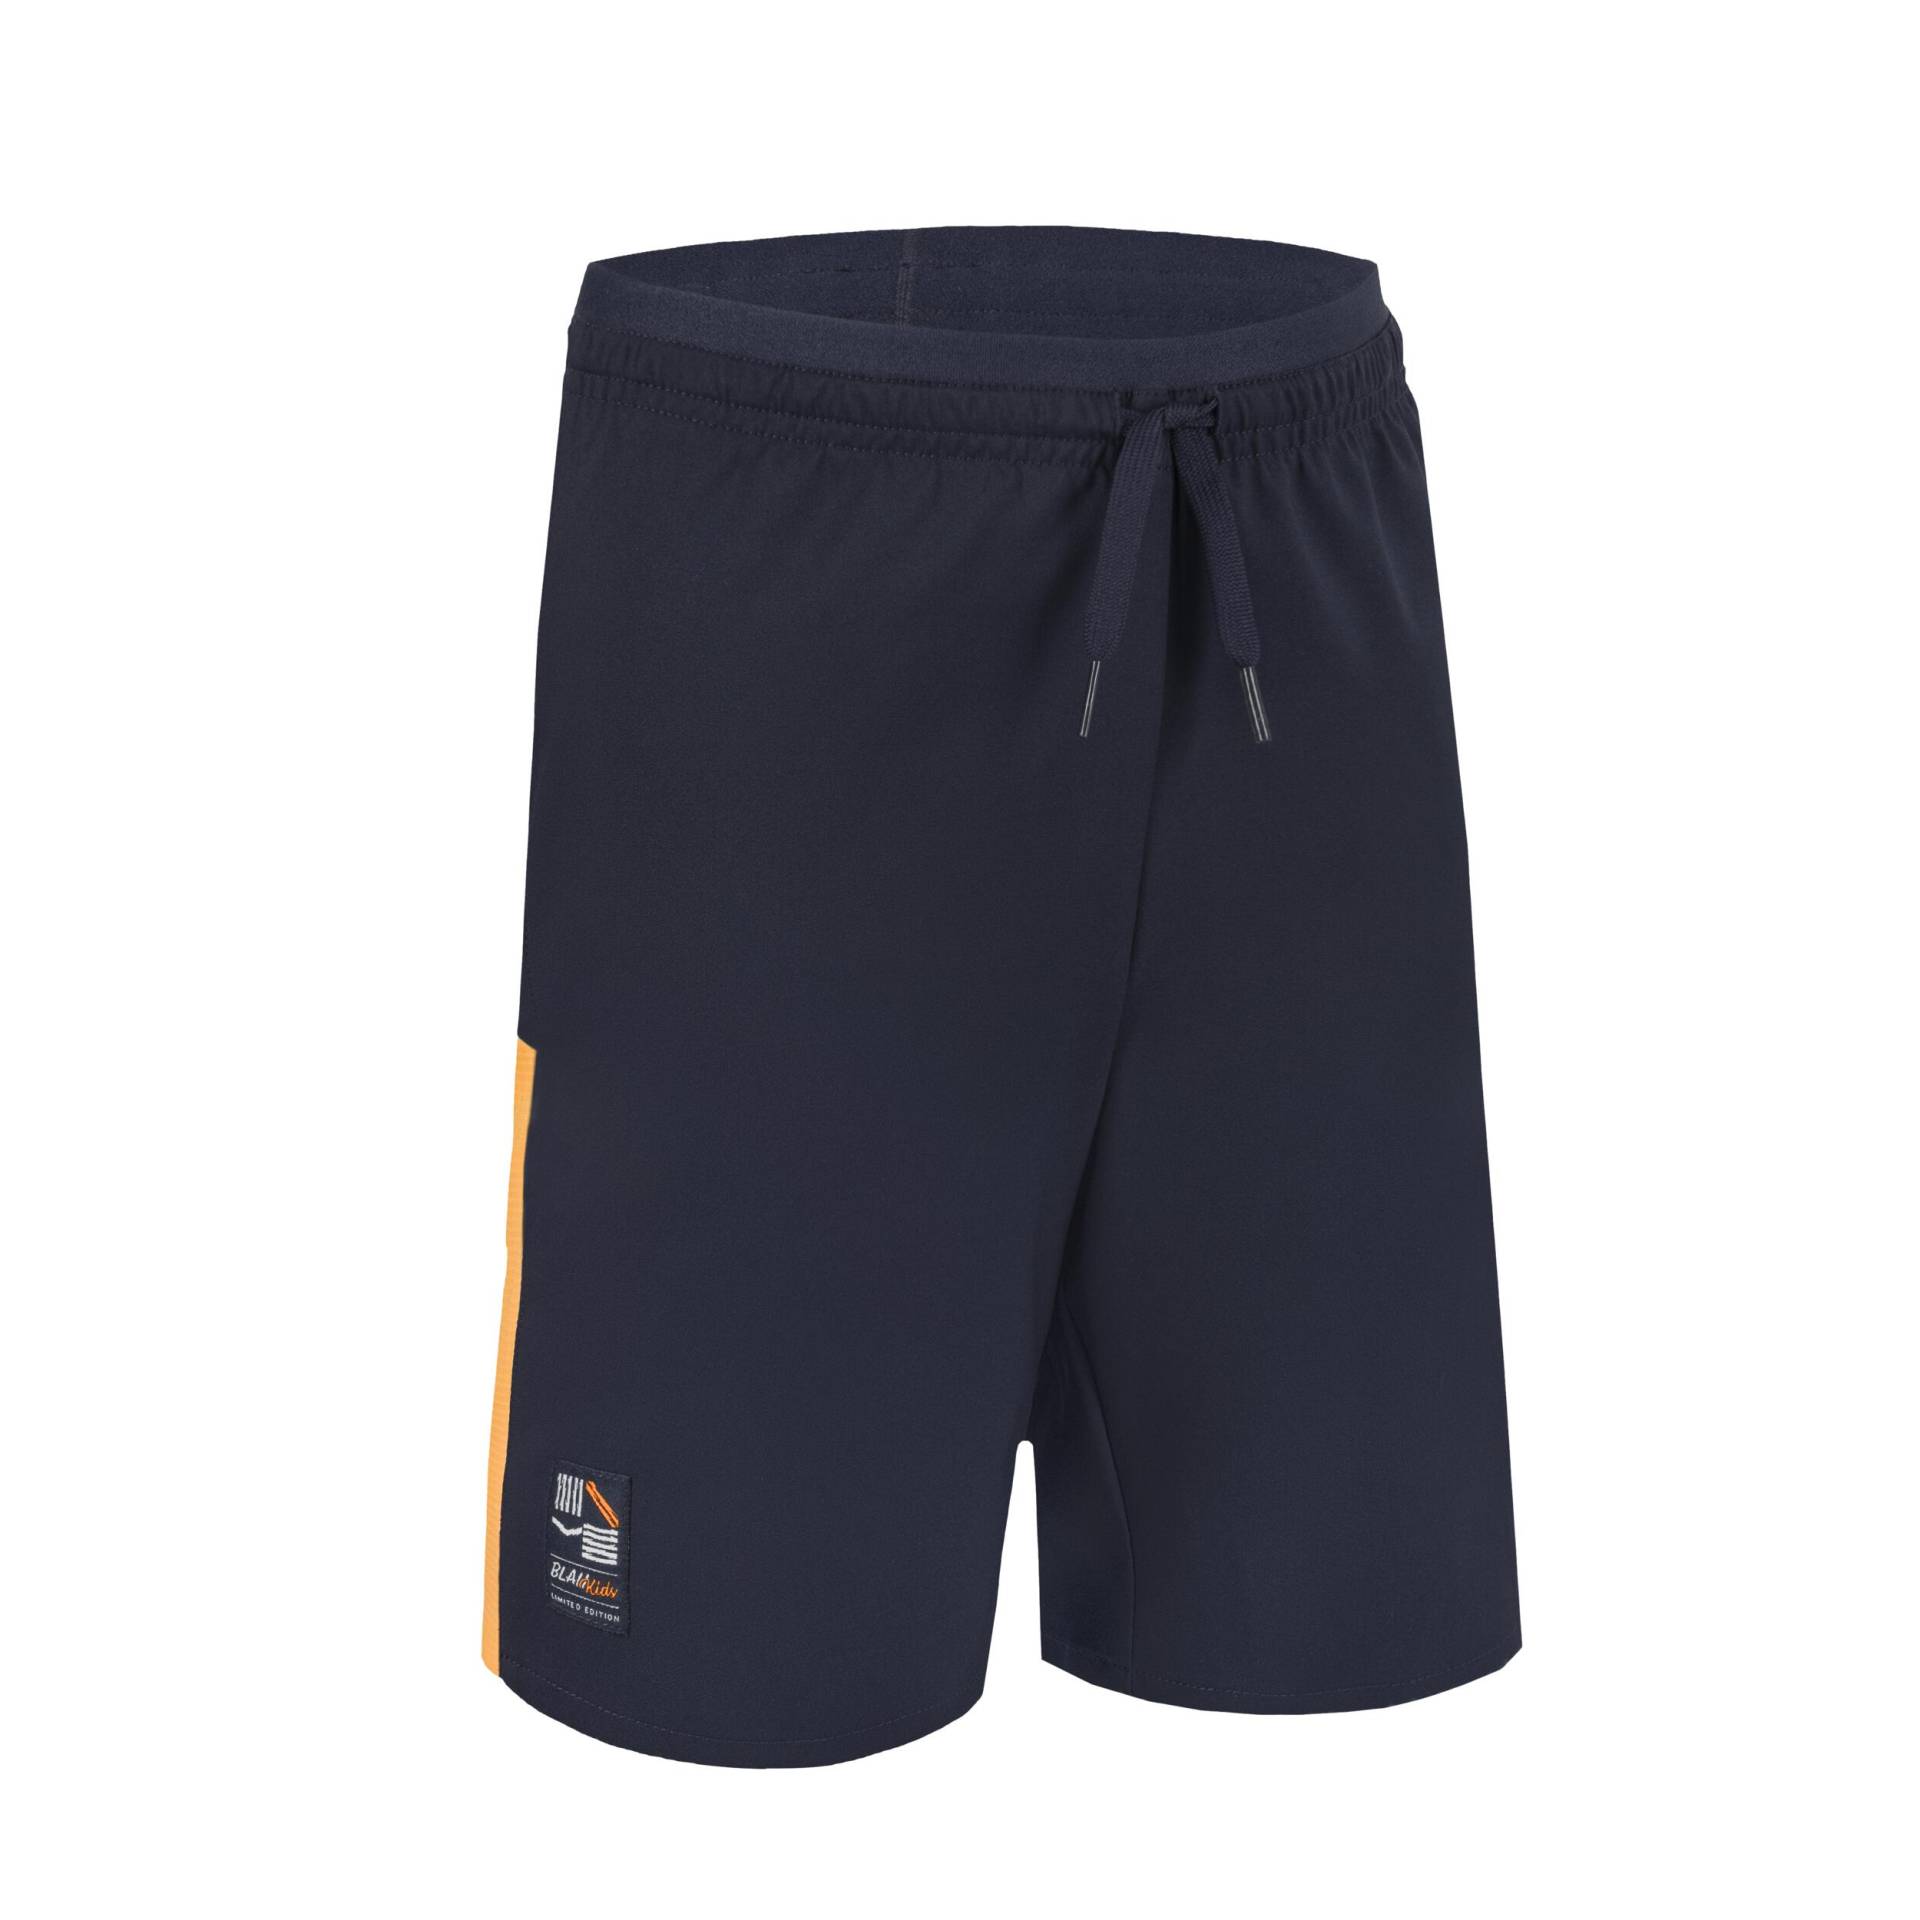 Kinder Fussball Shorts - marineblau/orange von KIPSTA